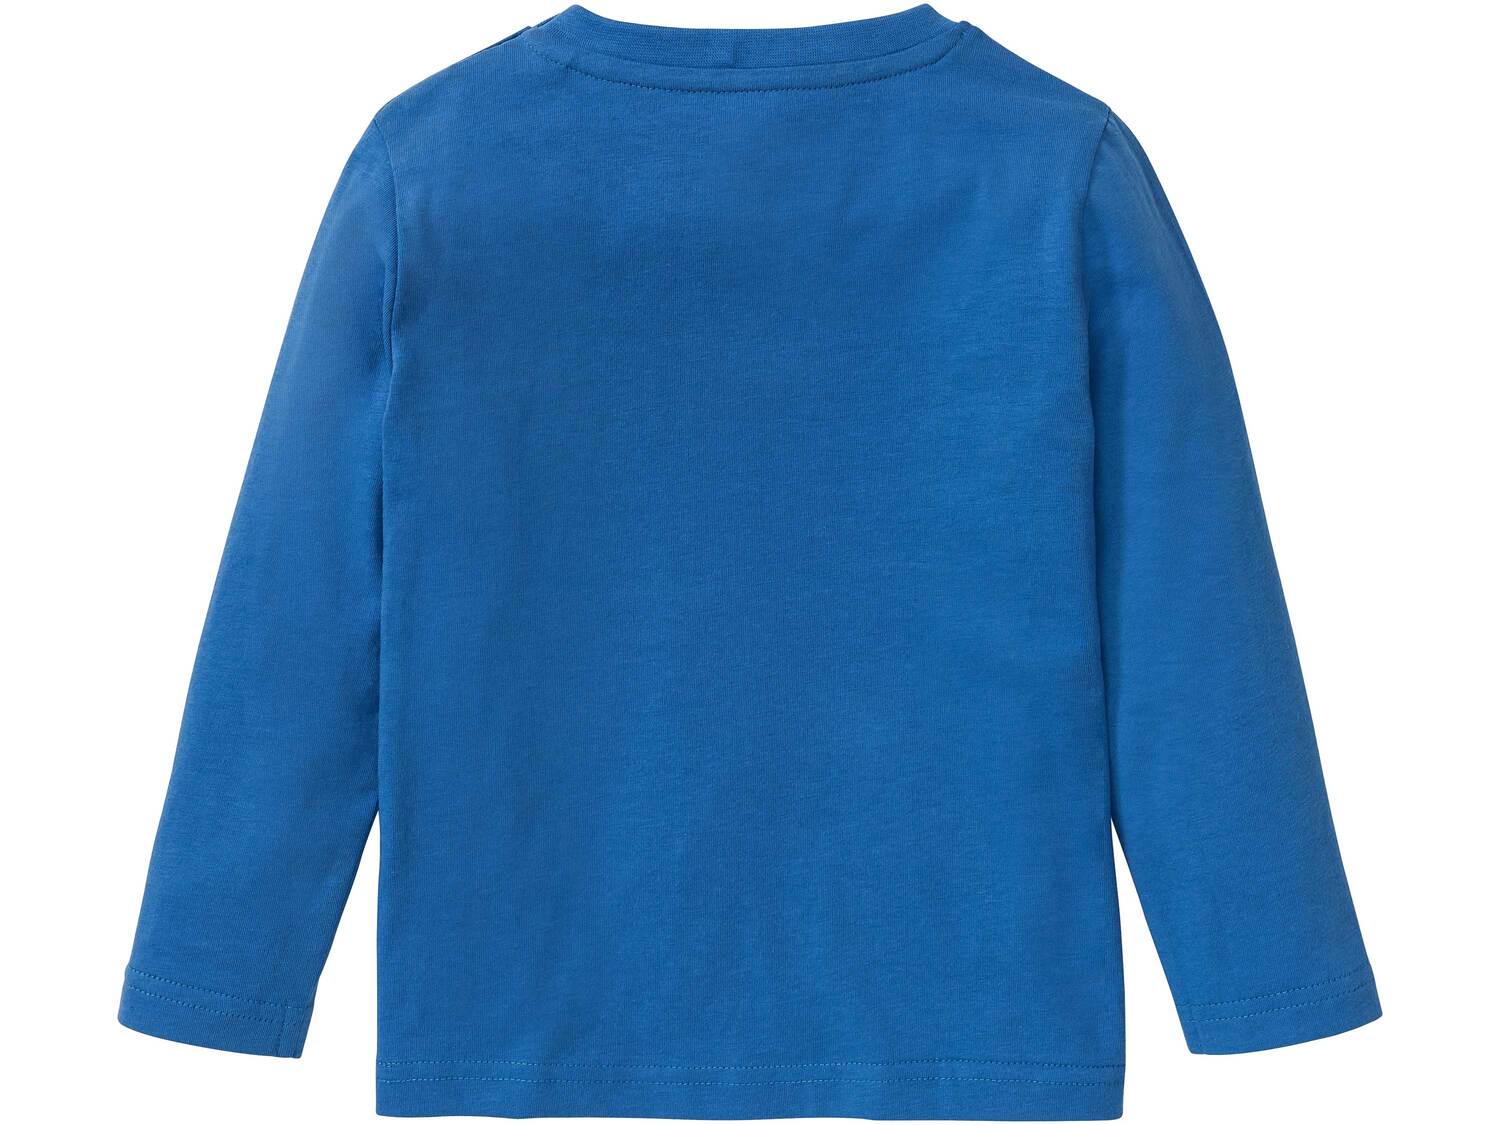 Koszulka z cekinami Lupilu, cena 14,99 PLN 
- rozmiary: 86-116
- 100% bawełny
- ...